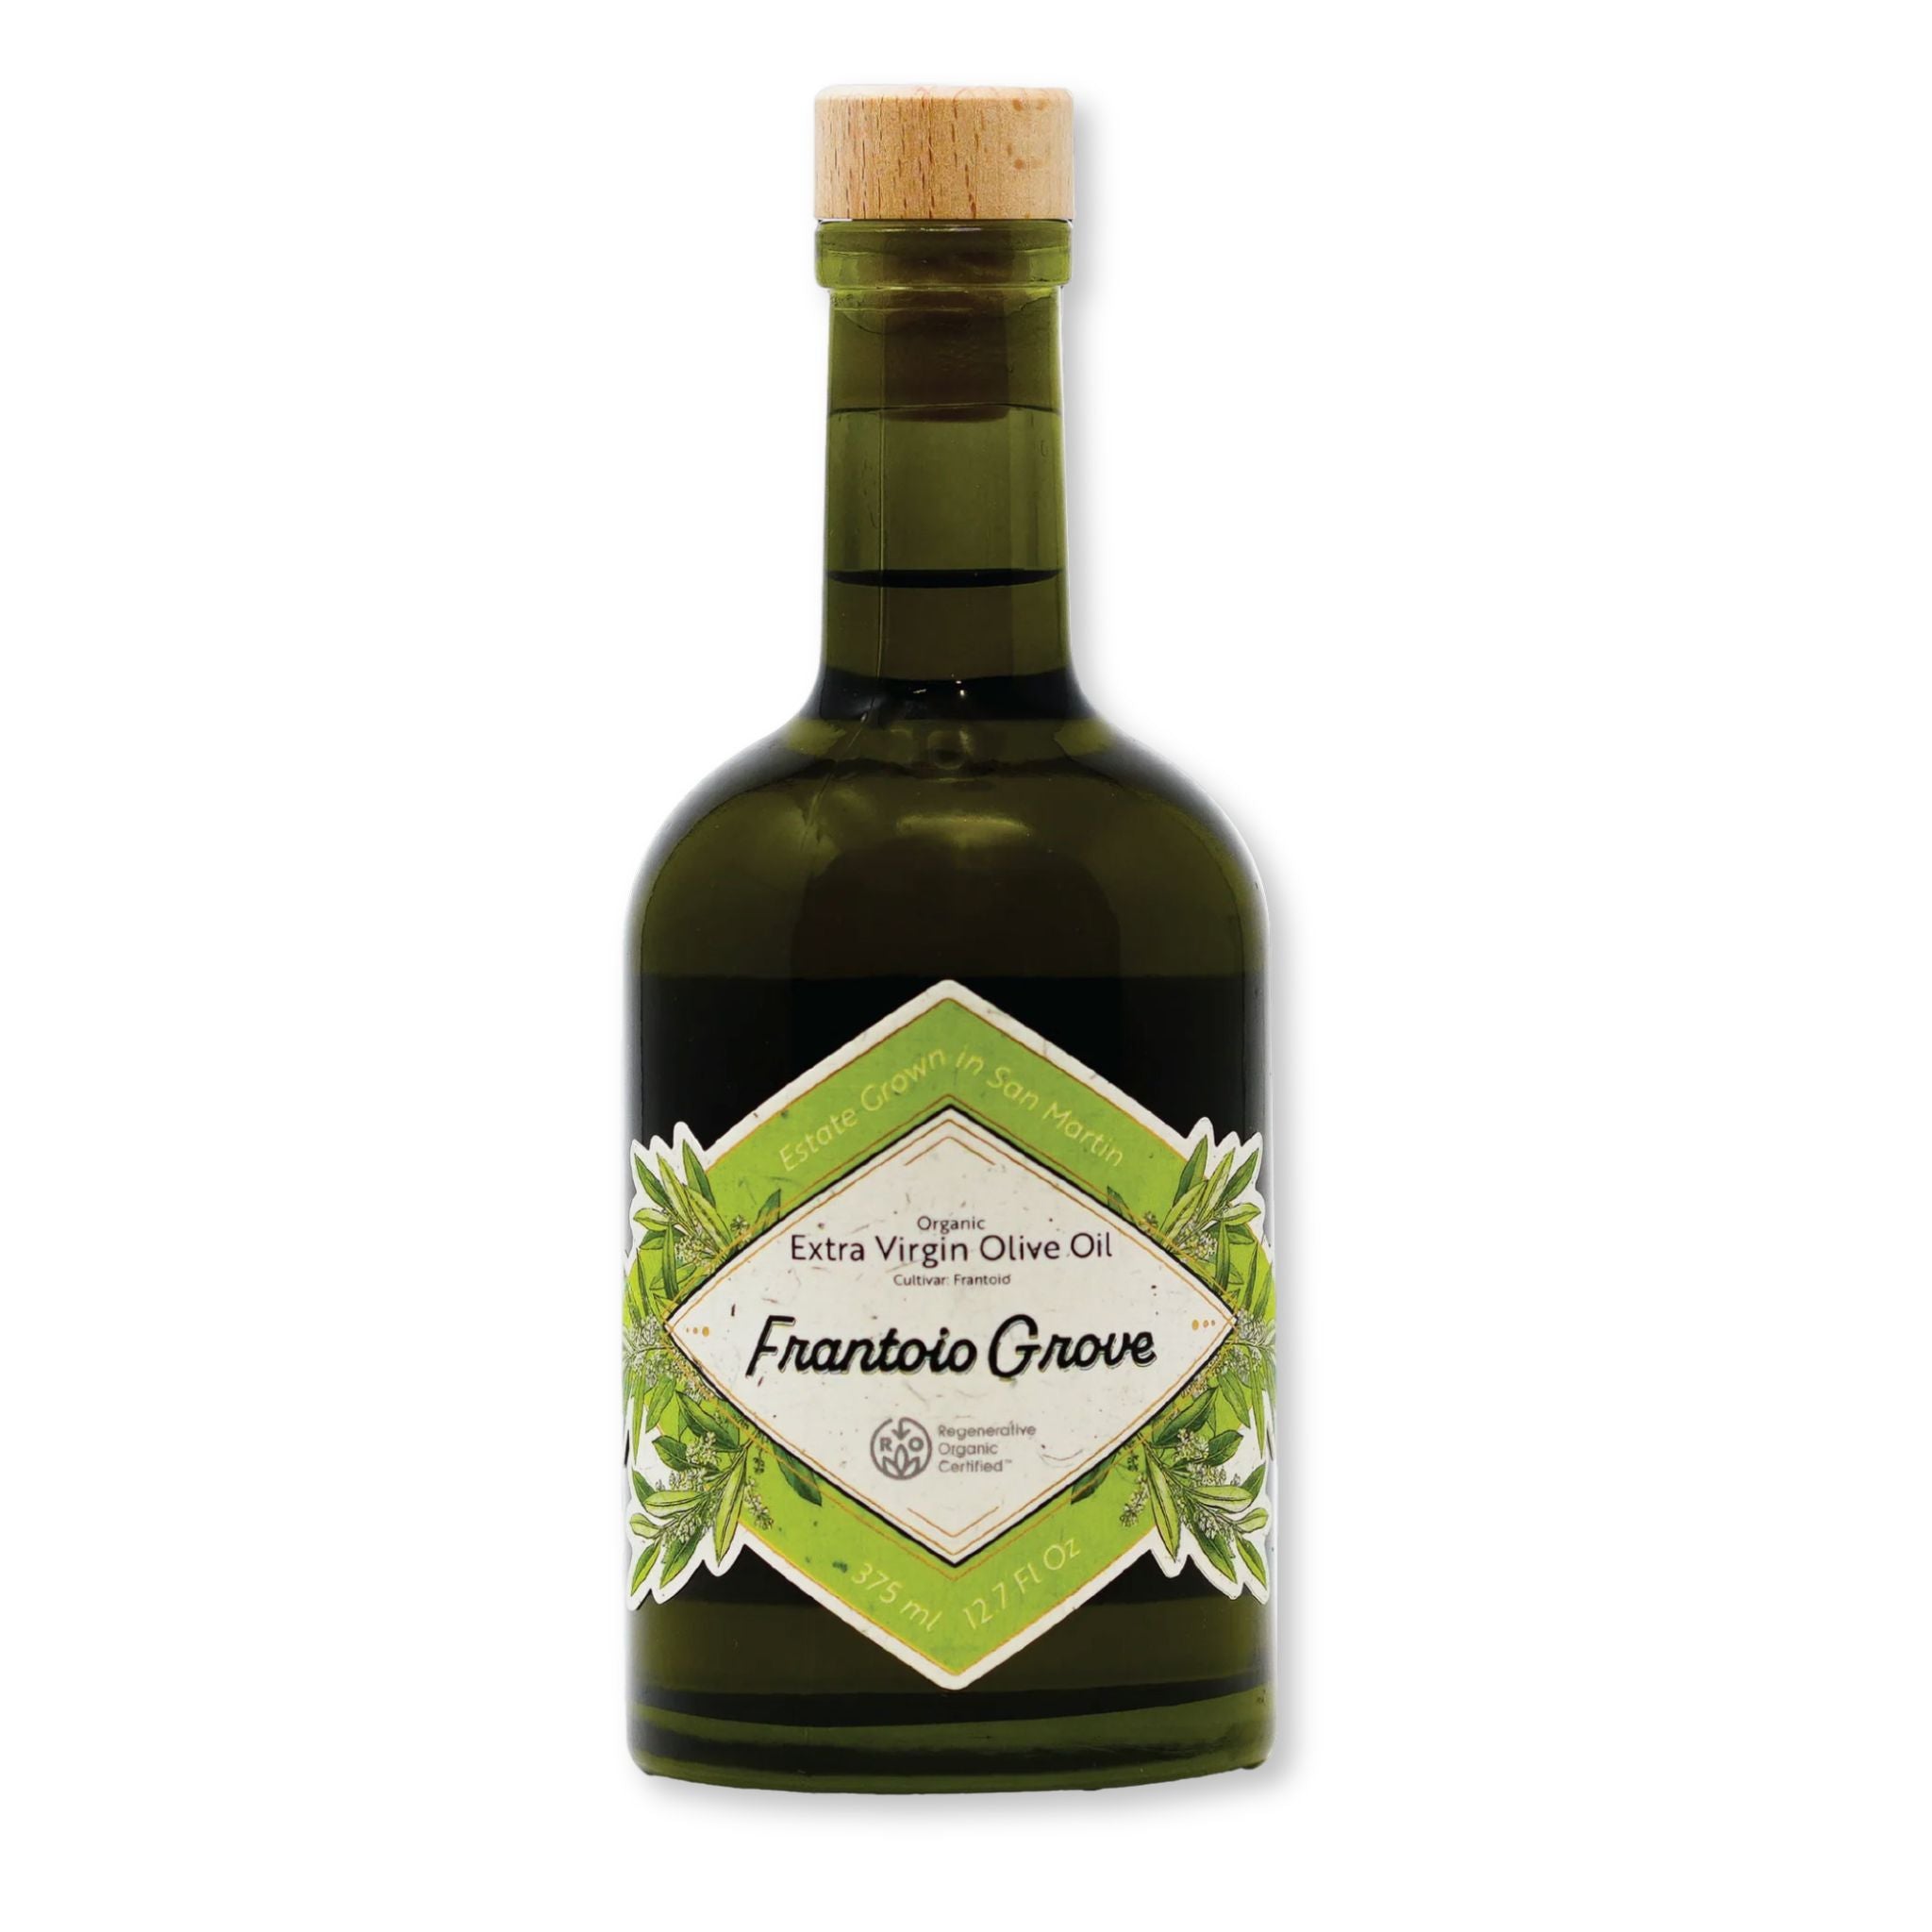 Bottle of Frantoio Grove Extra Virgin Olive Oil